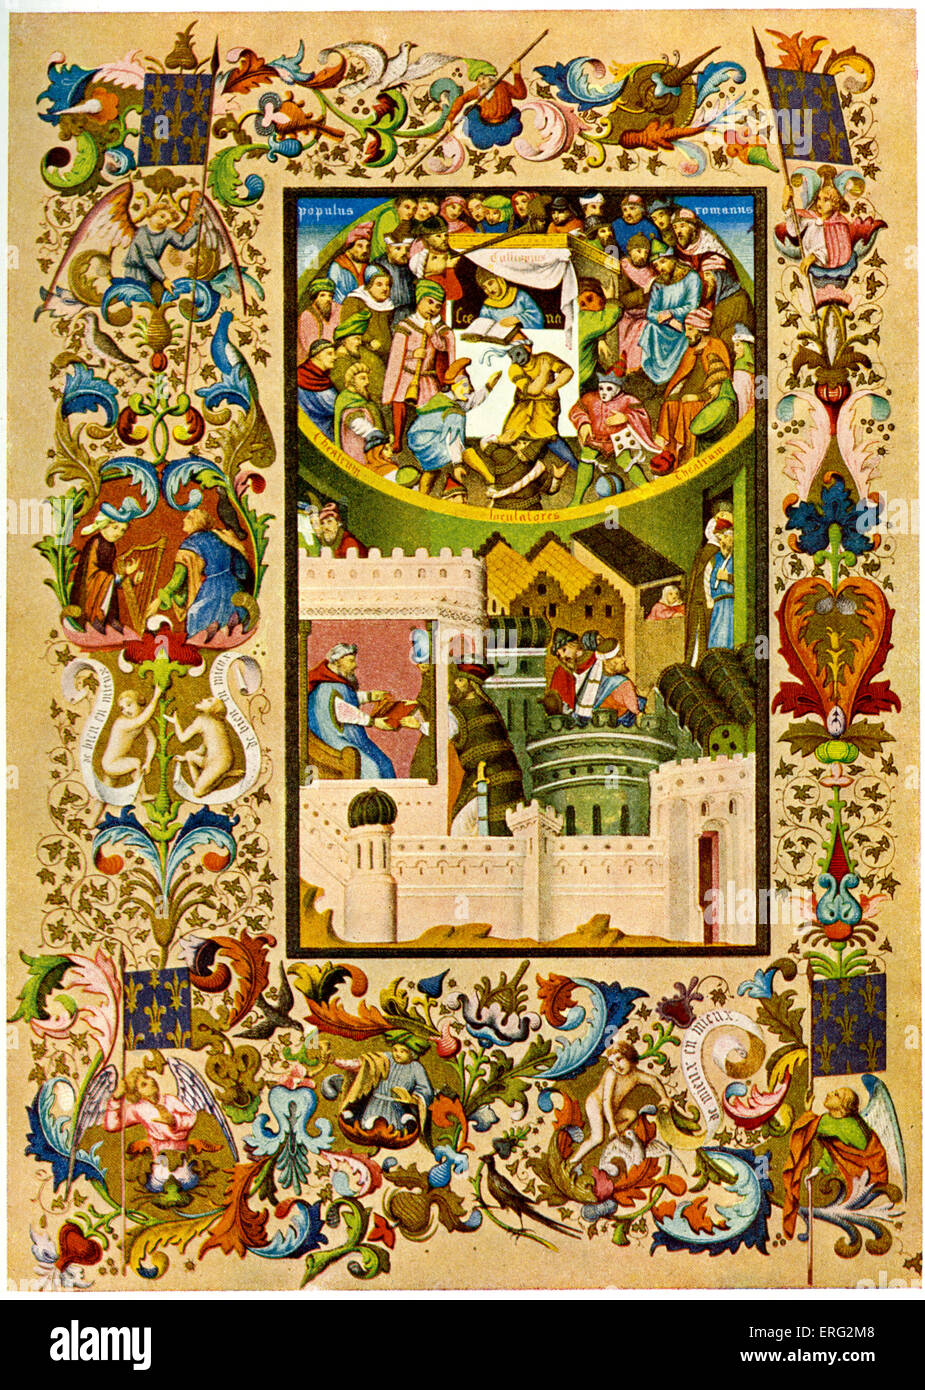 Miniatura de teatro francés durante la Edad Media, con cenefa decorativa. Uno de Charles VI 'S manuscritos de Terence. Foto de stock